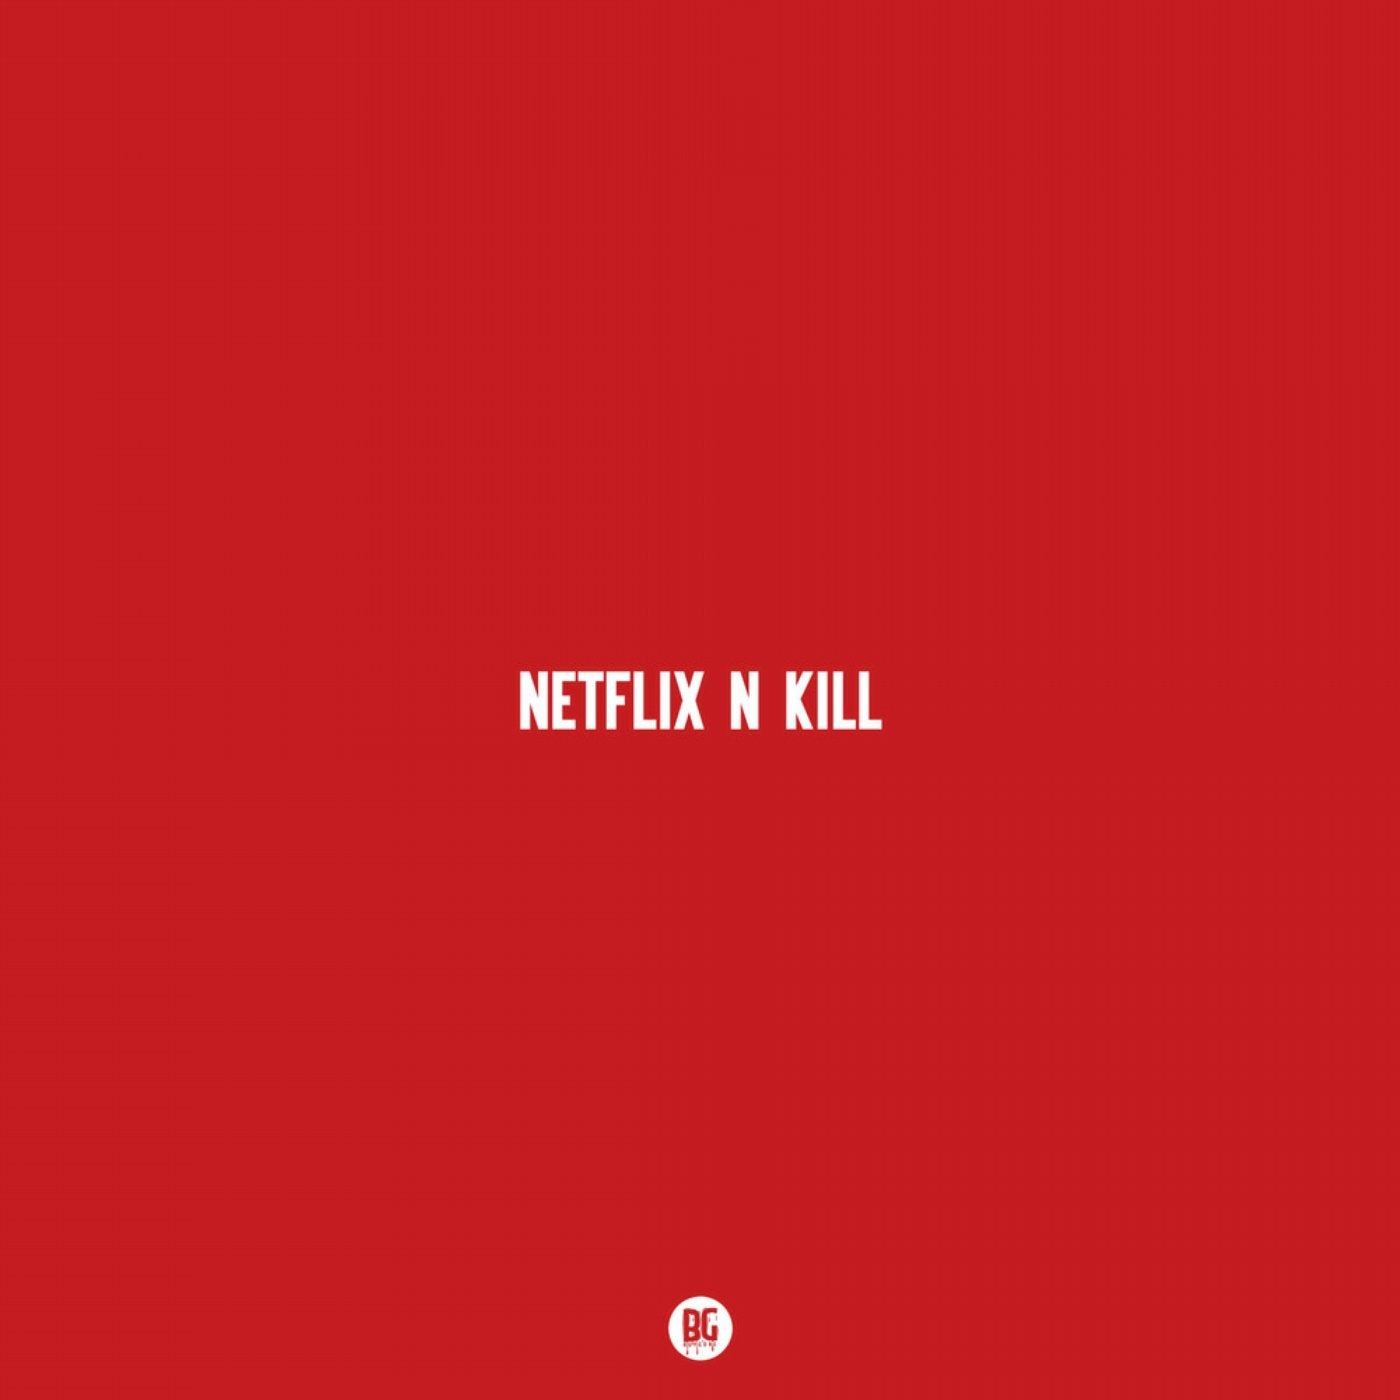 Netflix N Kill